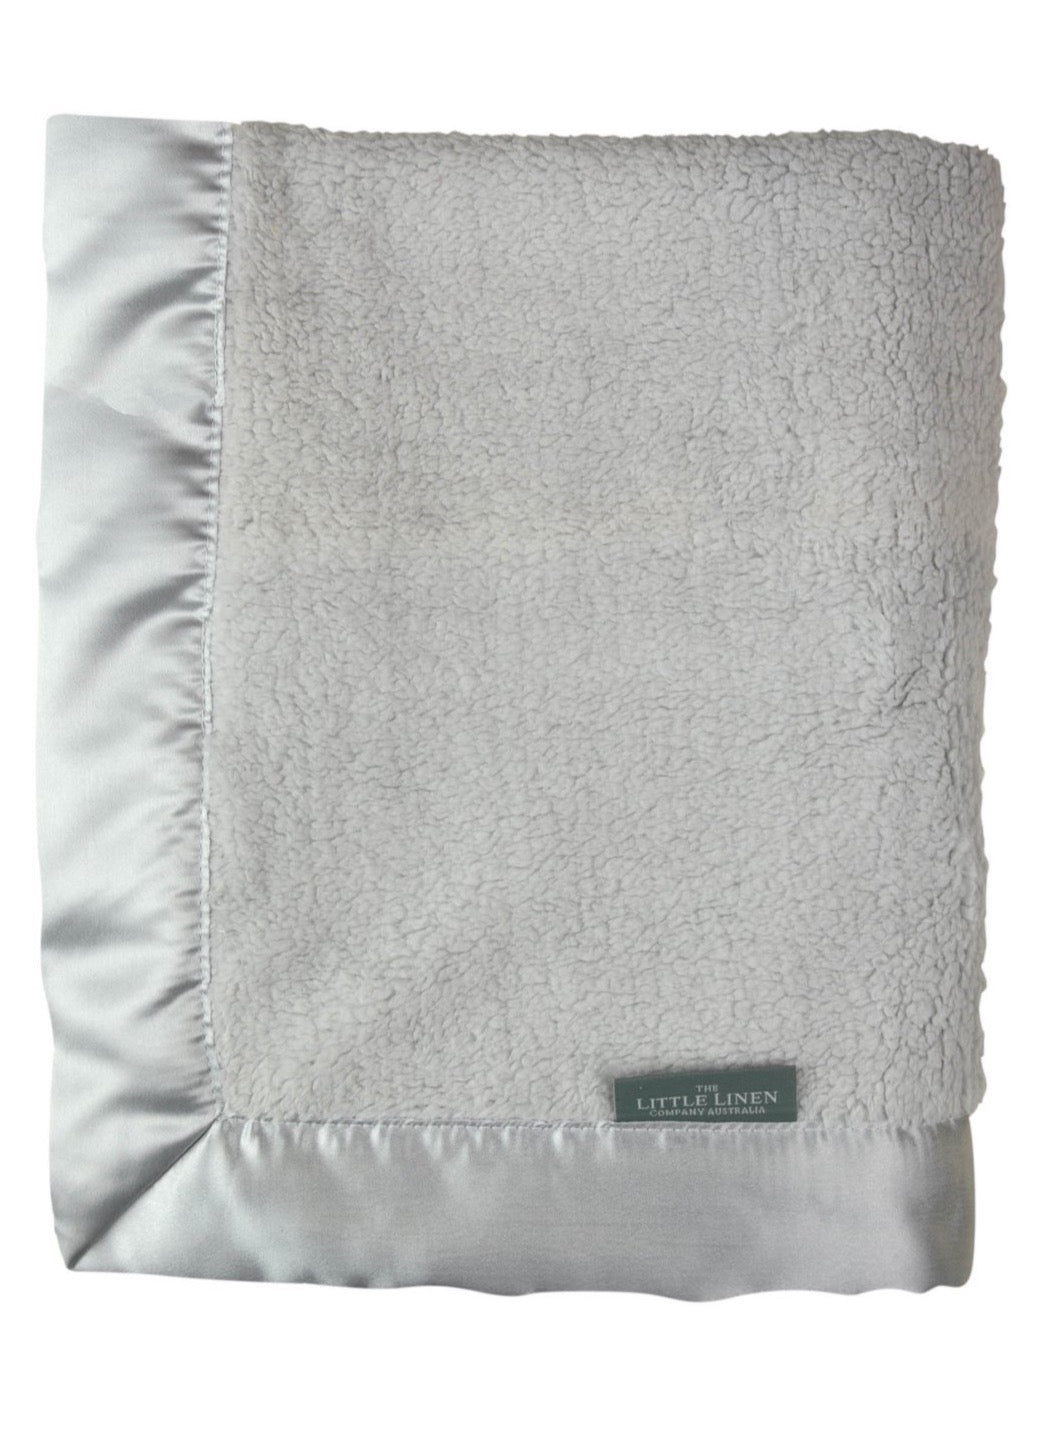 The Little Linen Co / Sherpa Stroller Blanket - Drizzle Grey